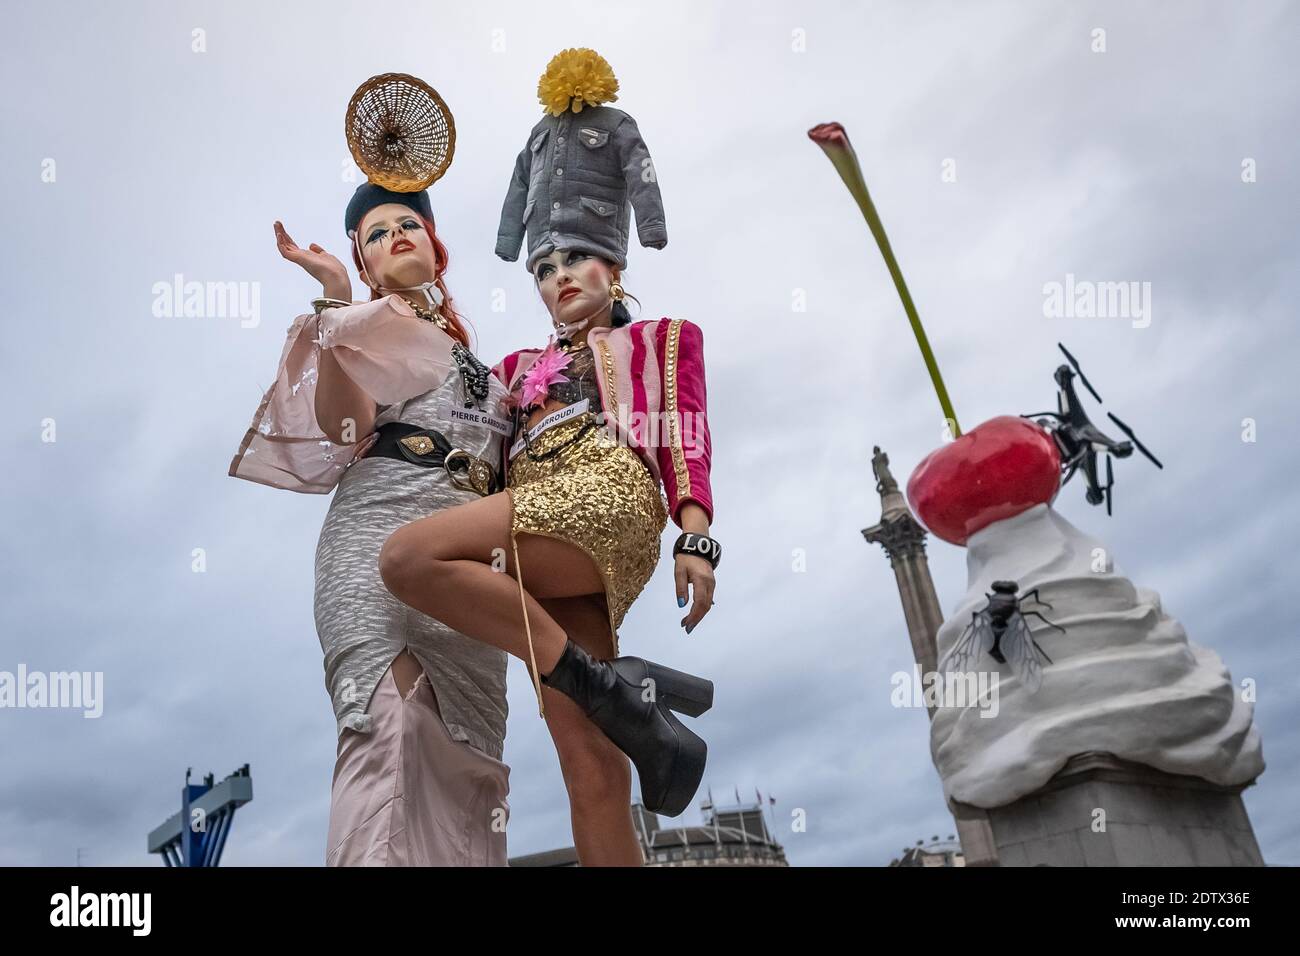 Les modèles prennent part à un spectacle de mode coloré de rue tormode près de Trafalgar Square pour le designer Pierre Garroudi. Londres, Royaume-Uni. Banque D'Images